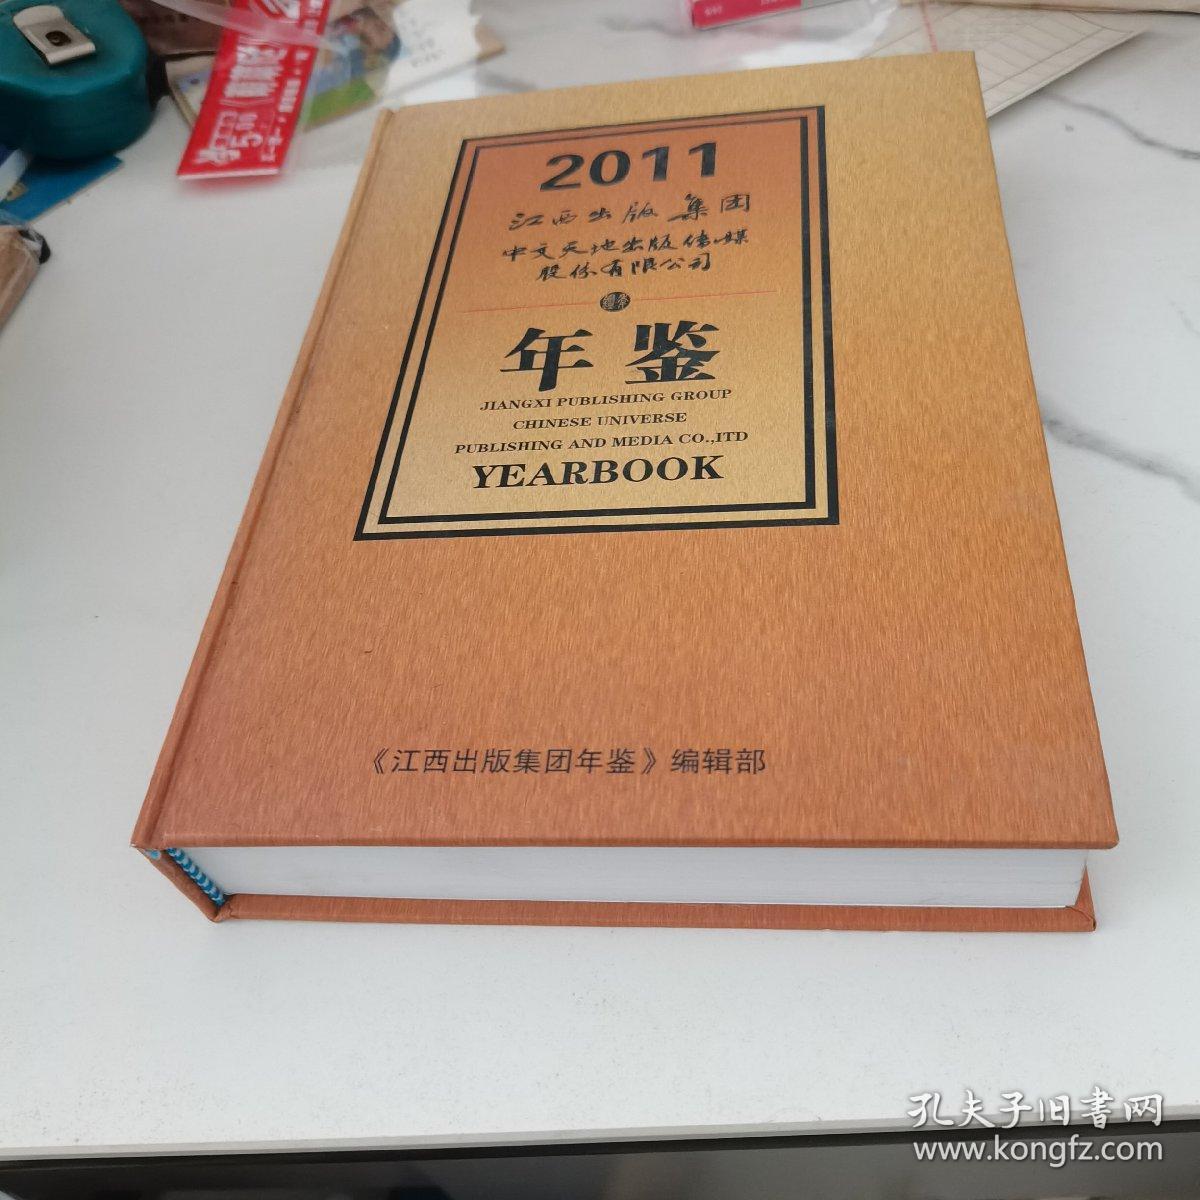 江西出版集团中文天地出版传媒股份有限公司年鉴（2011）